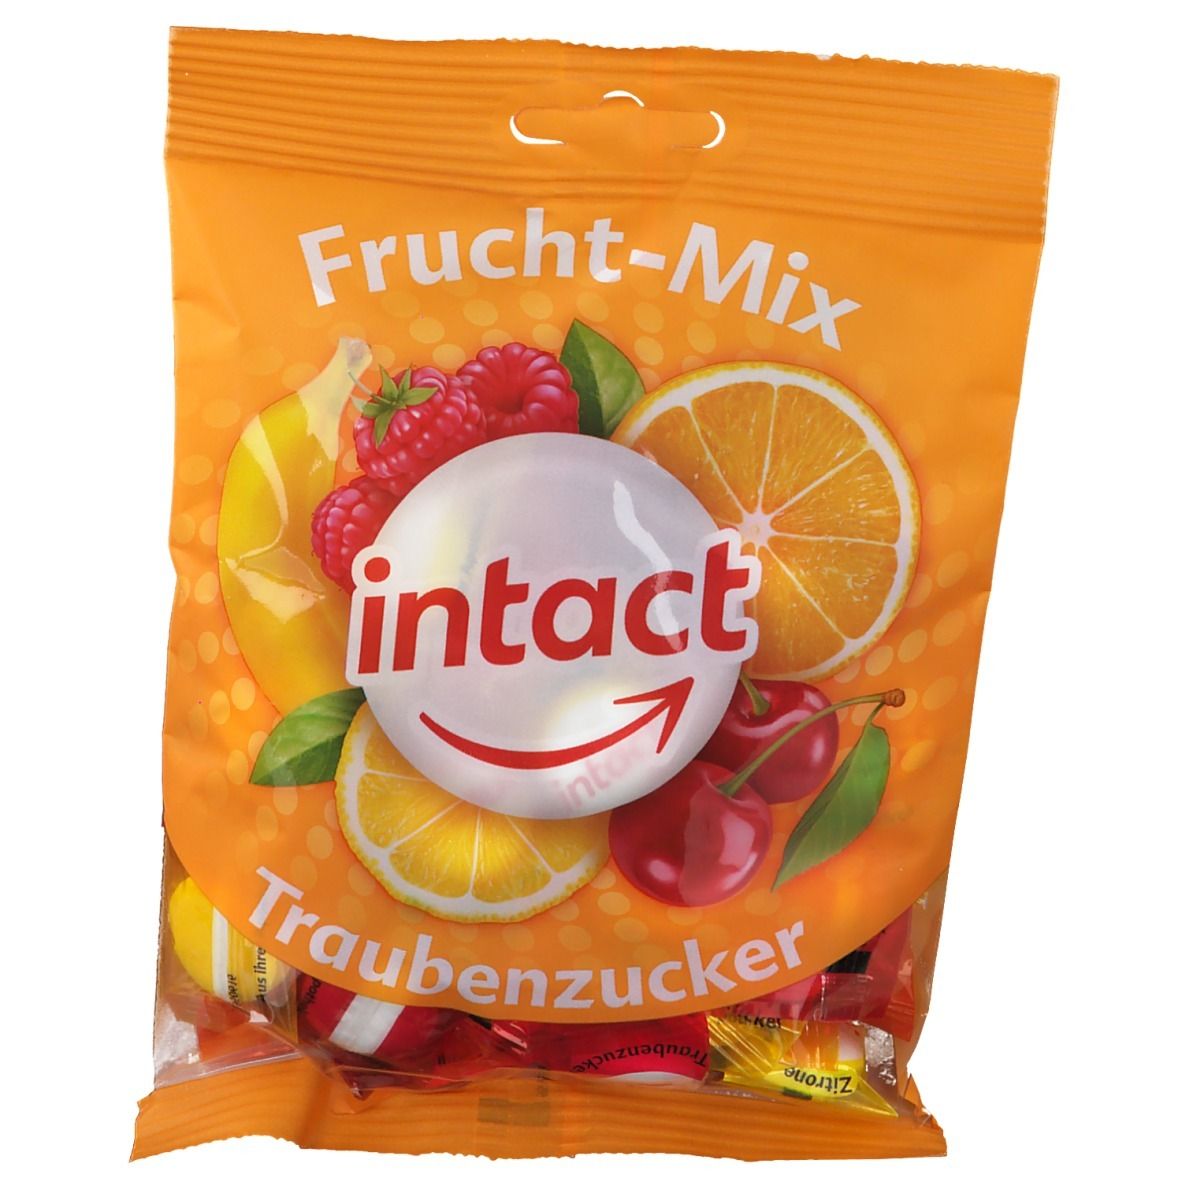 intact® Frucht-Mix Traubenzucker